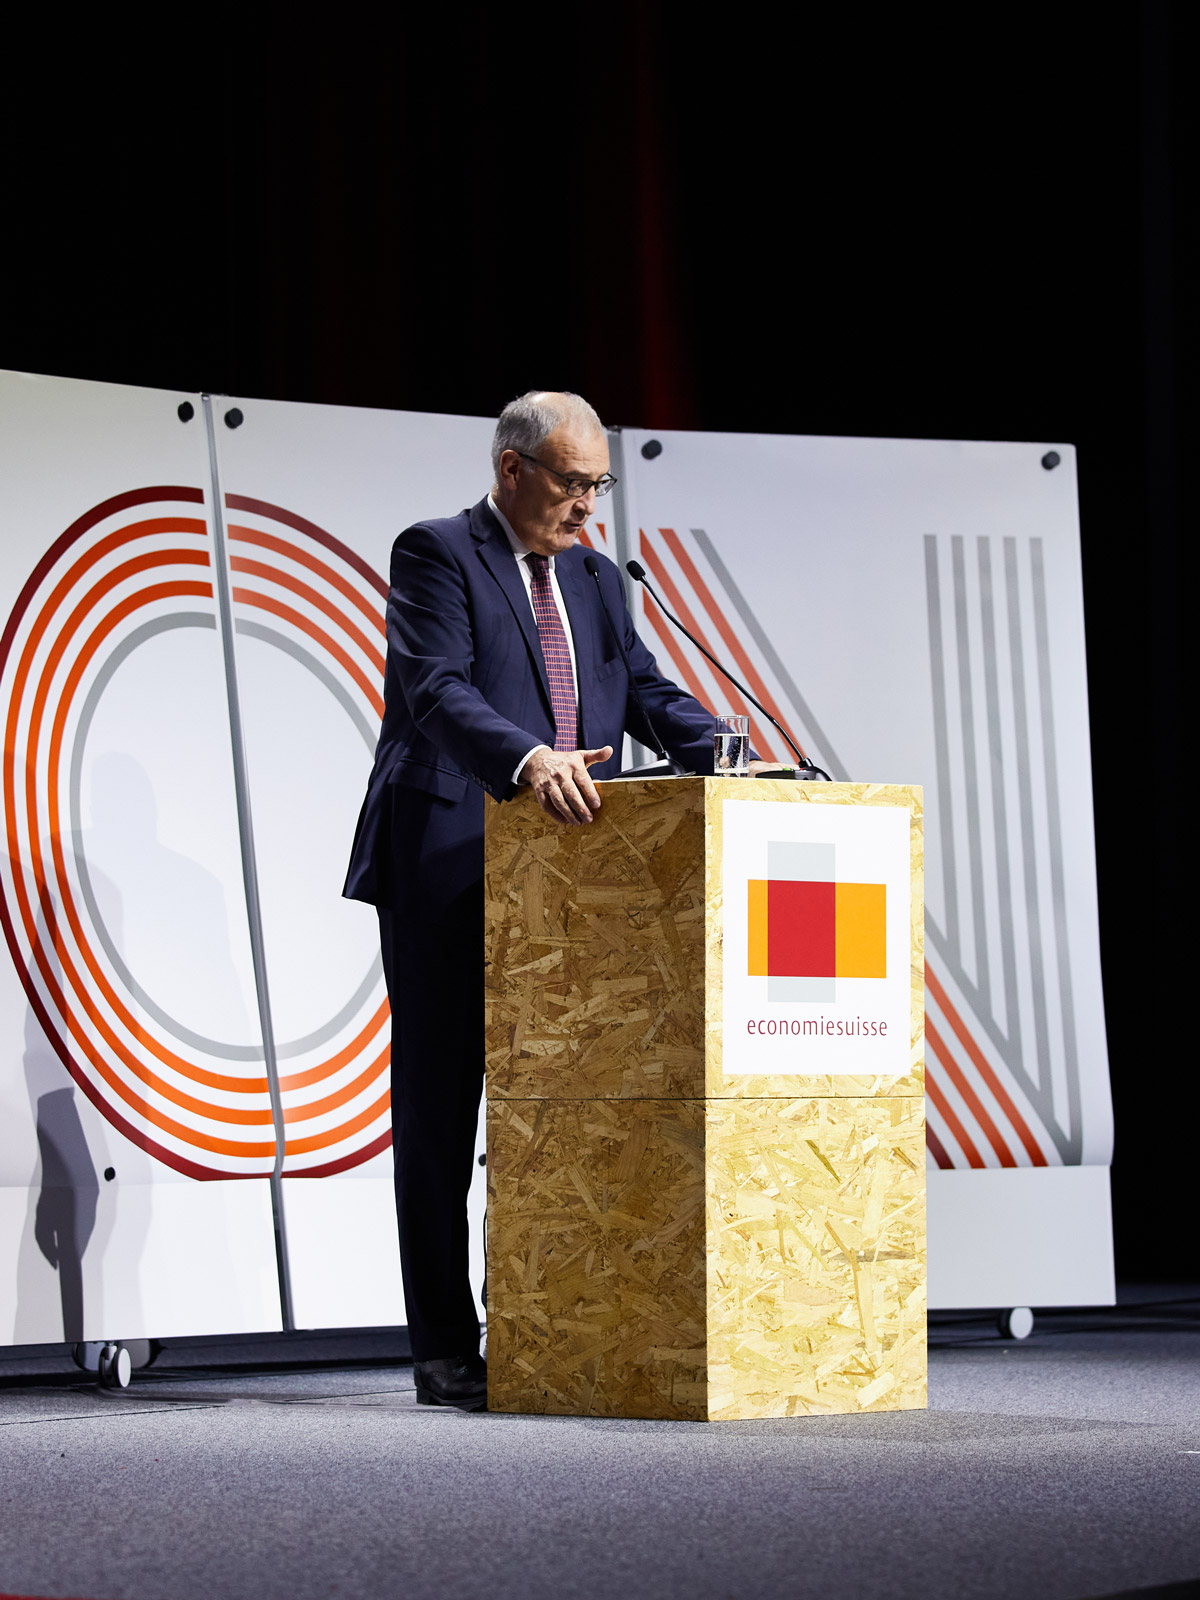 Christoph Mäder an Rednerpult auf der Bühne am Tag der Wirtschaft